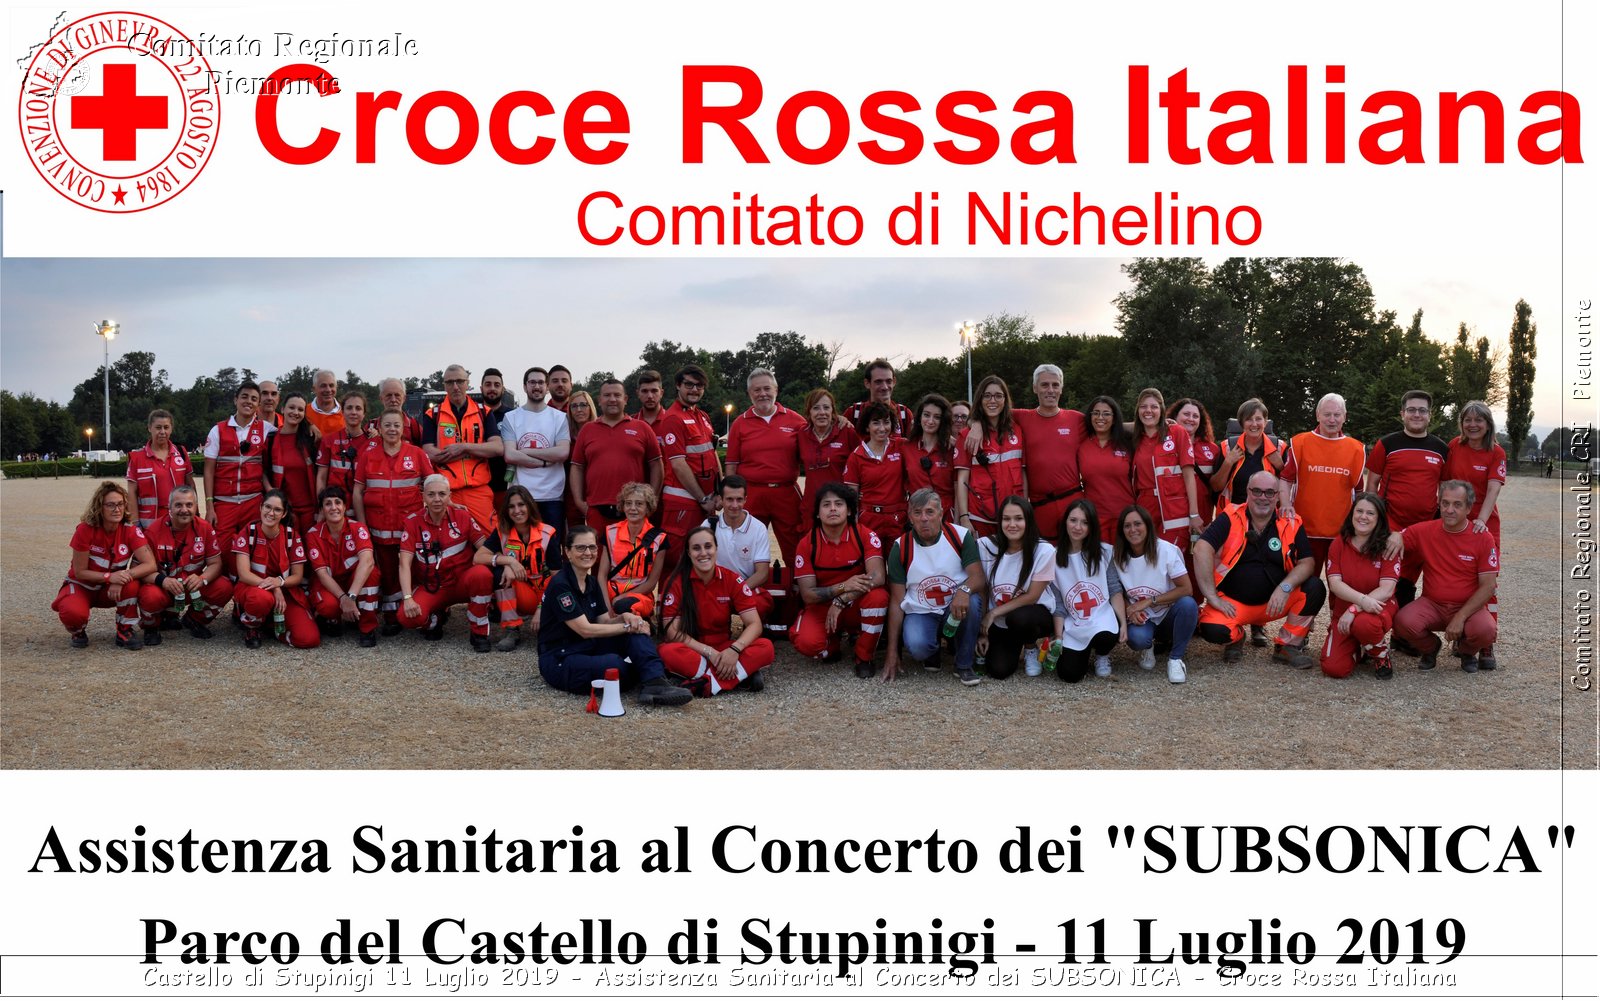 Castello di Stupinigi 11 Luglio 2019 - Assistenza Sanitaria al Concerto dei SUBSONICA - Croce Rossa Italiana - Comitato Regionale del Piemonte